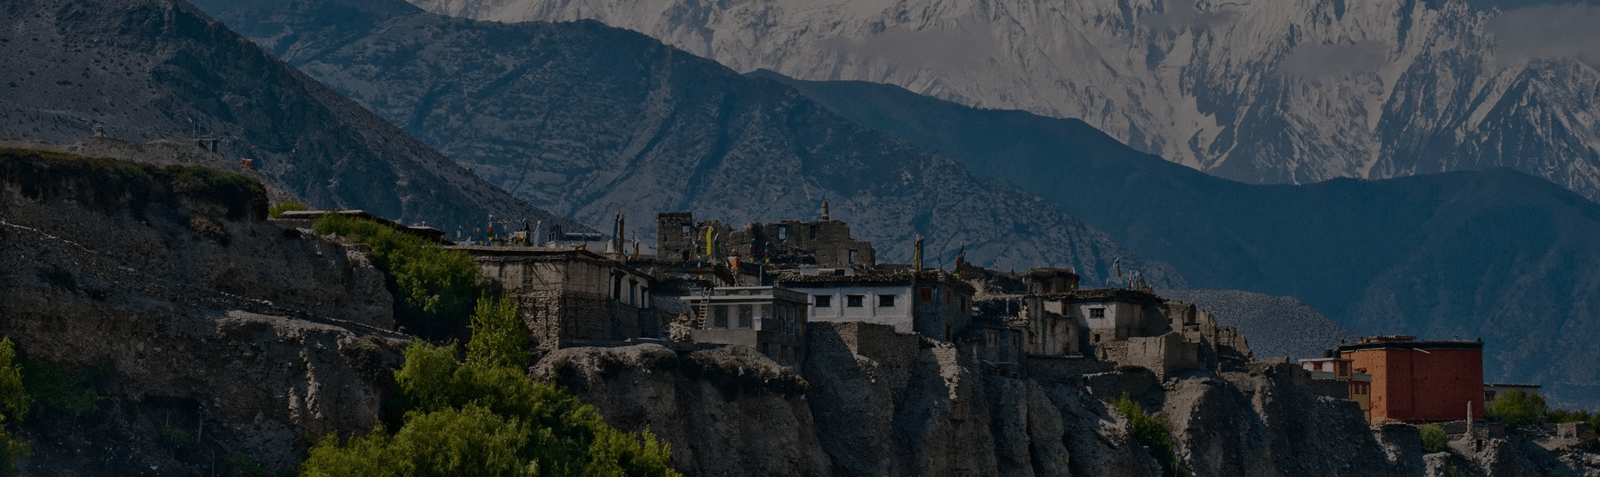 Hemis Monastery